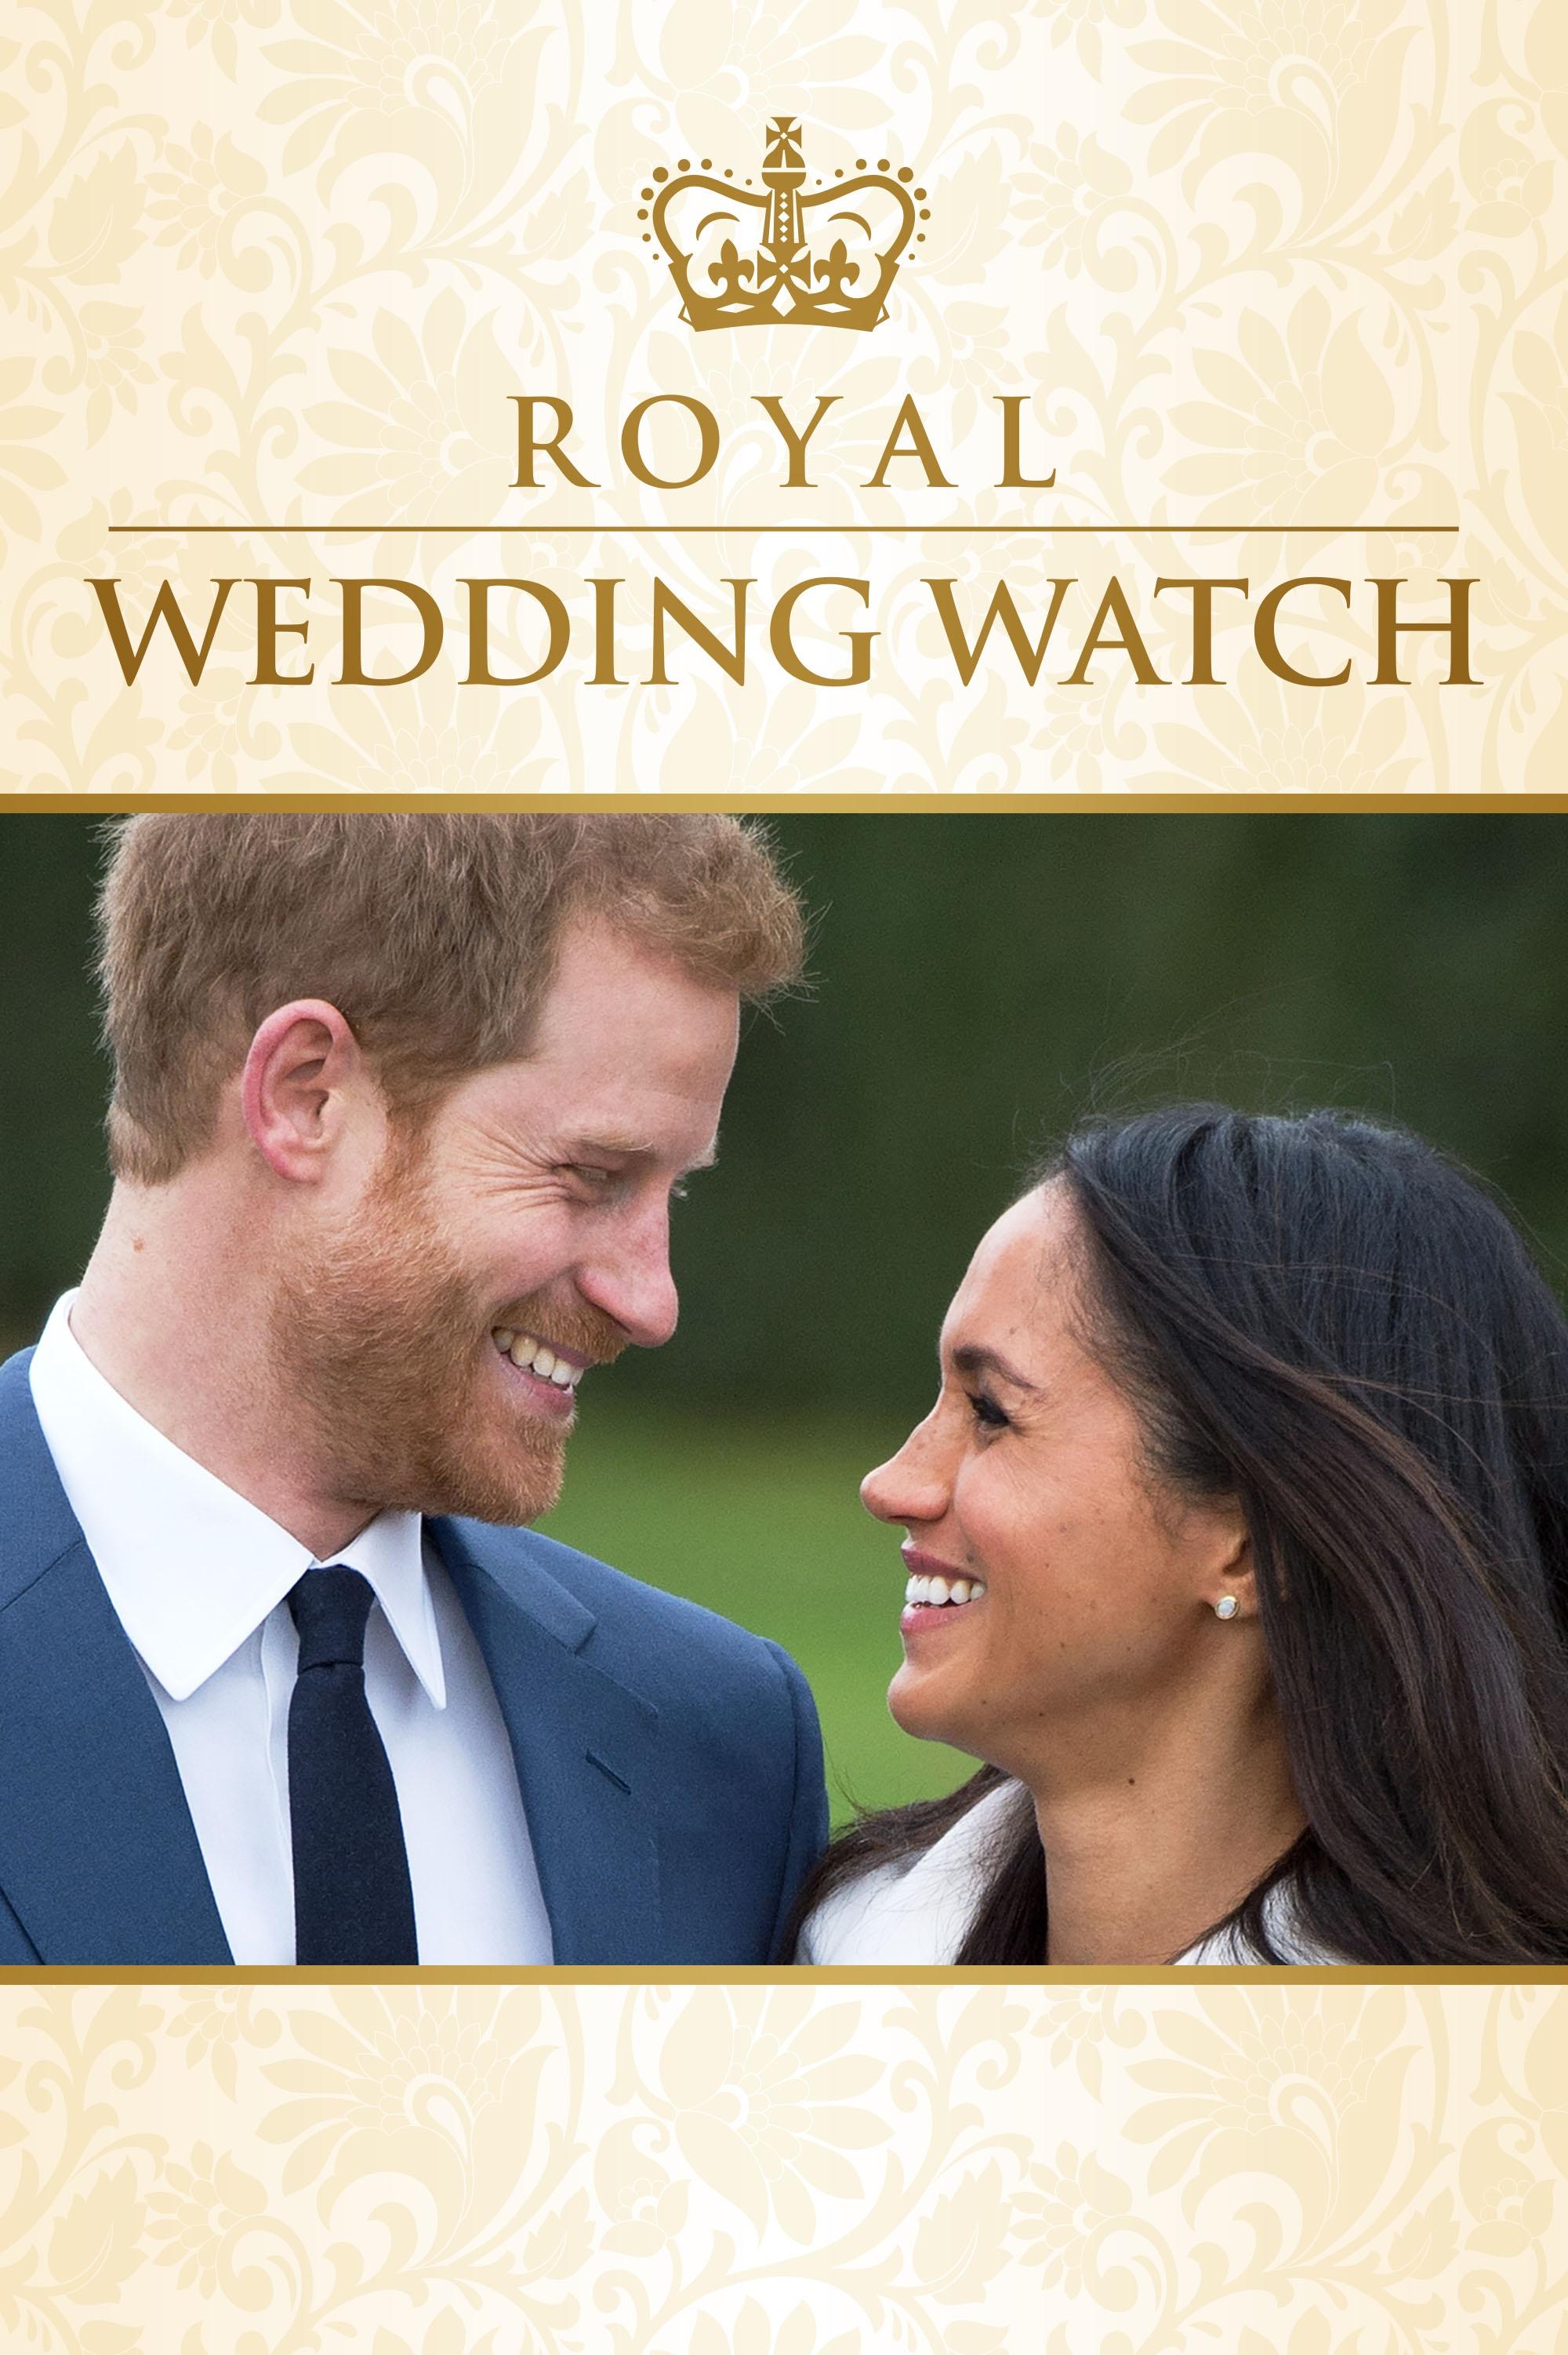 Royal Wedding Watch Pbs